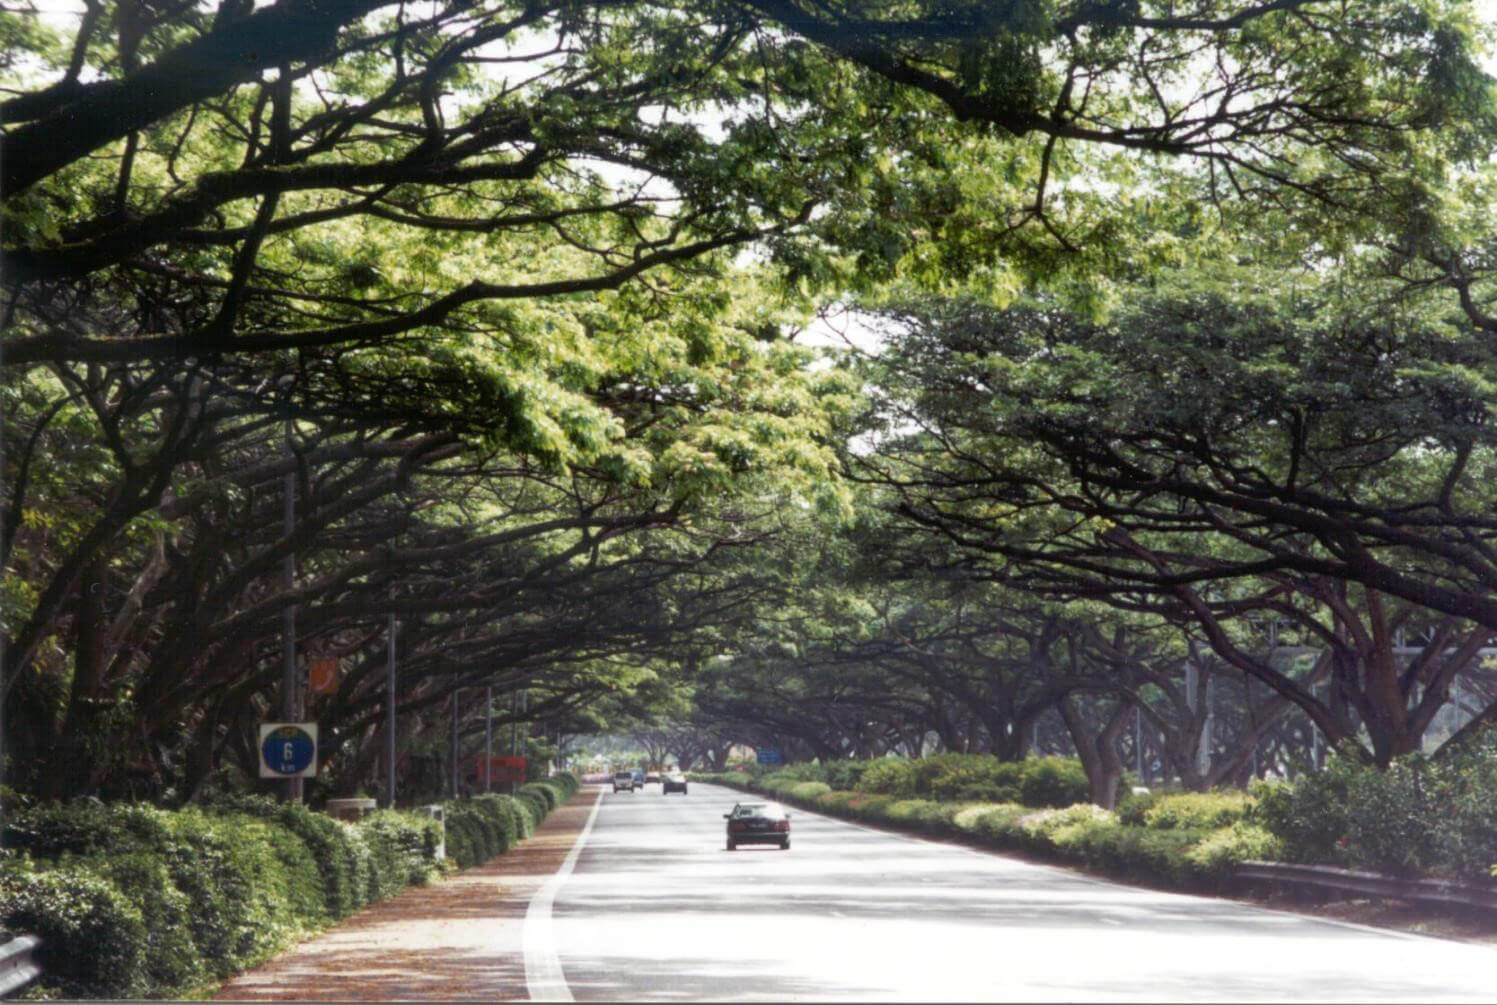 新加坡的East Coast Parkway是全世界最優質的綠化高速公路，路兩旁種滿了高大健碩的雨豆樹，綠意盎然，樹蔭遮天，非常美觀壯麗。（詹志勇教授提供）